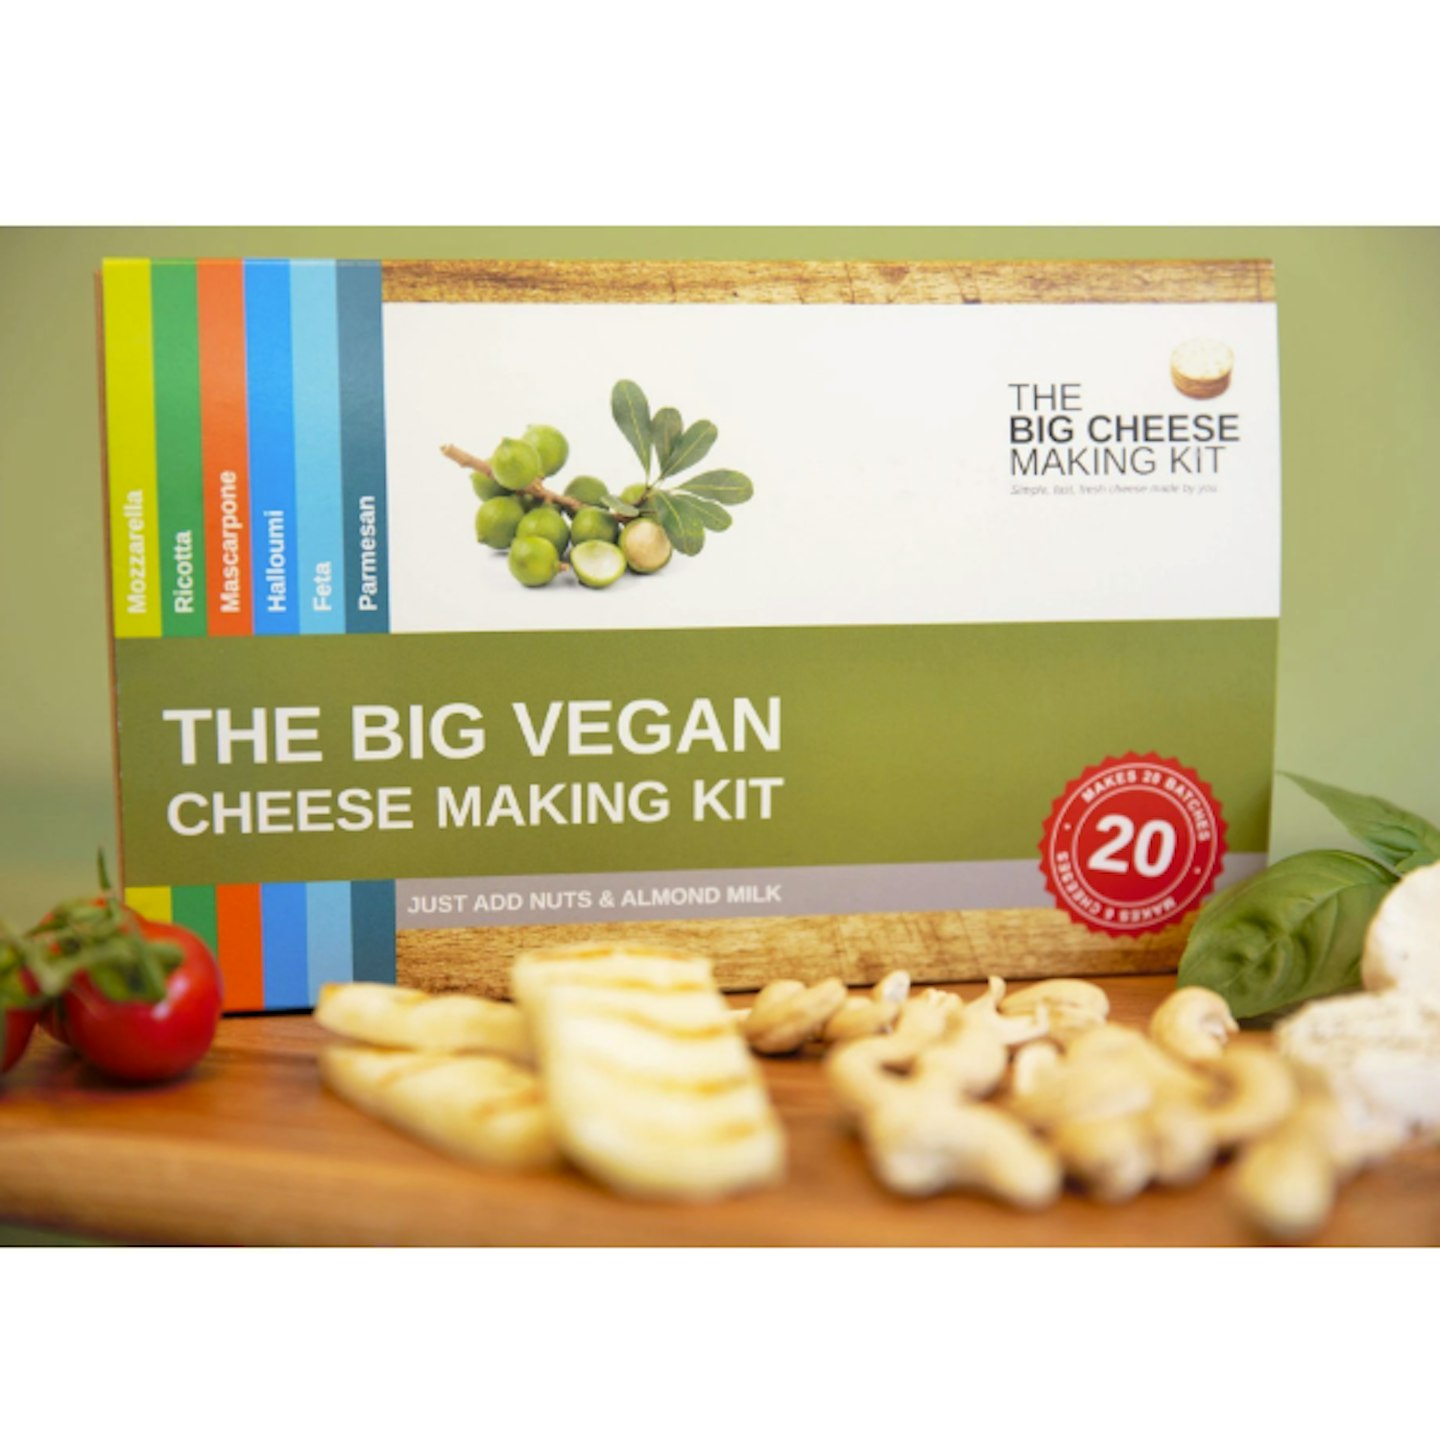 The Big Vegan Cheese Making Kit